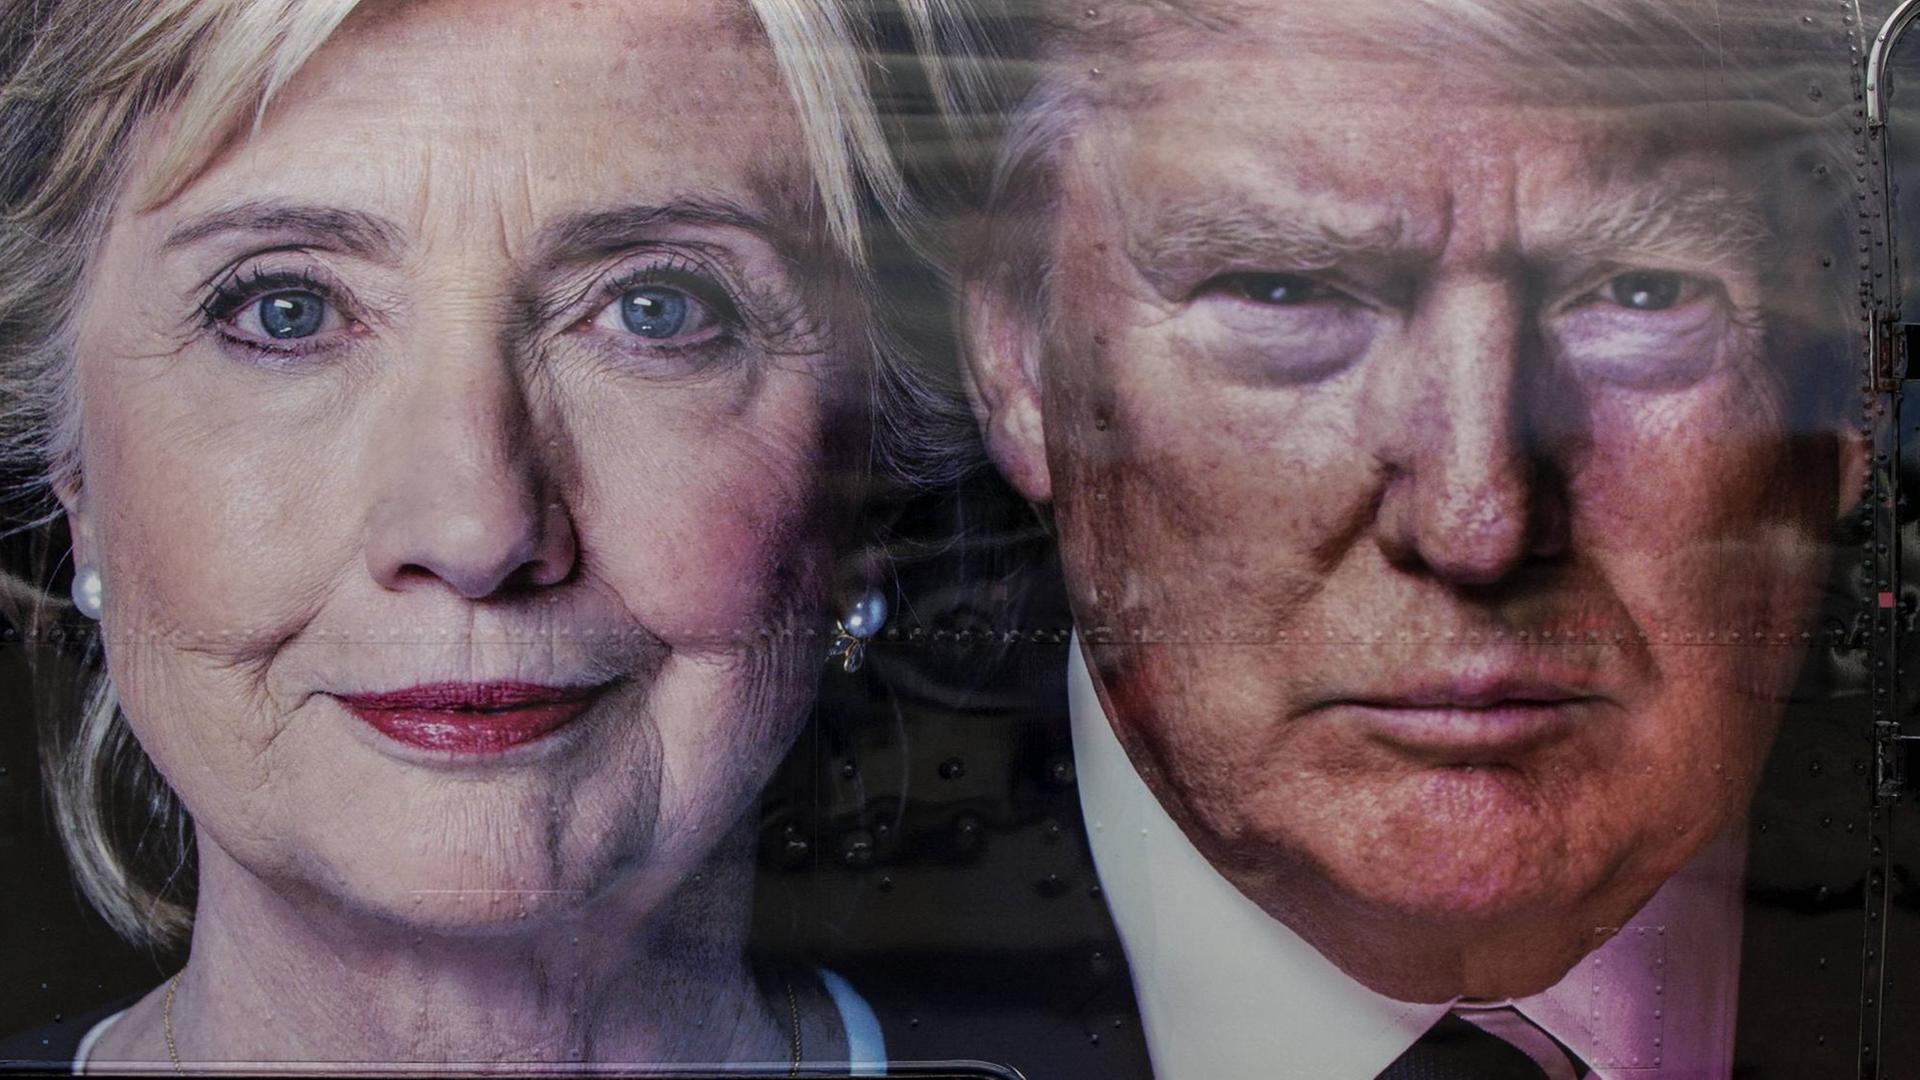 Auf einem CNN Übertragungswagen sind die Porträts von Hillary Clinton (l.) und Donald Trump (r.) zu sehen.